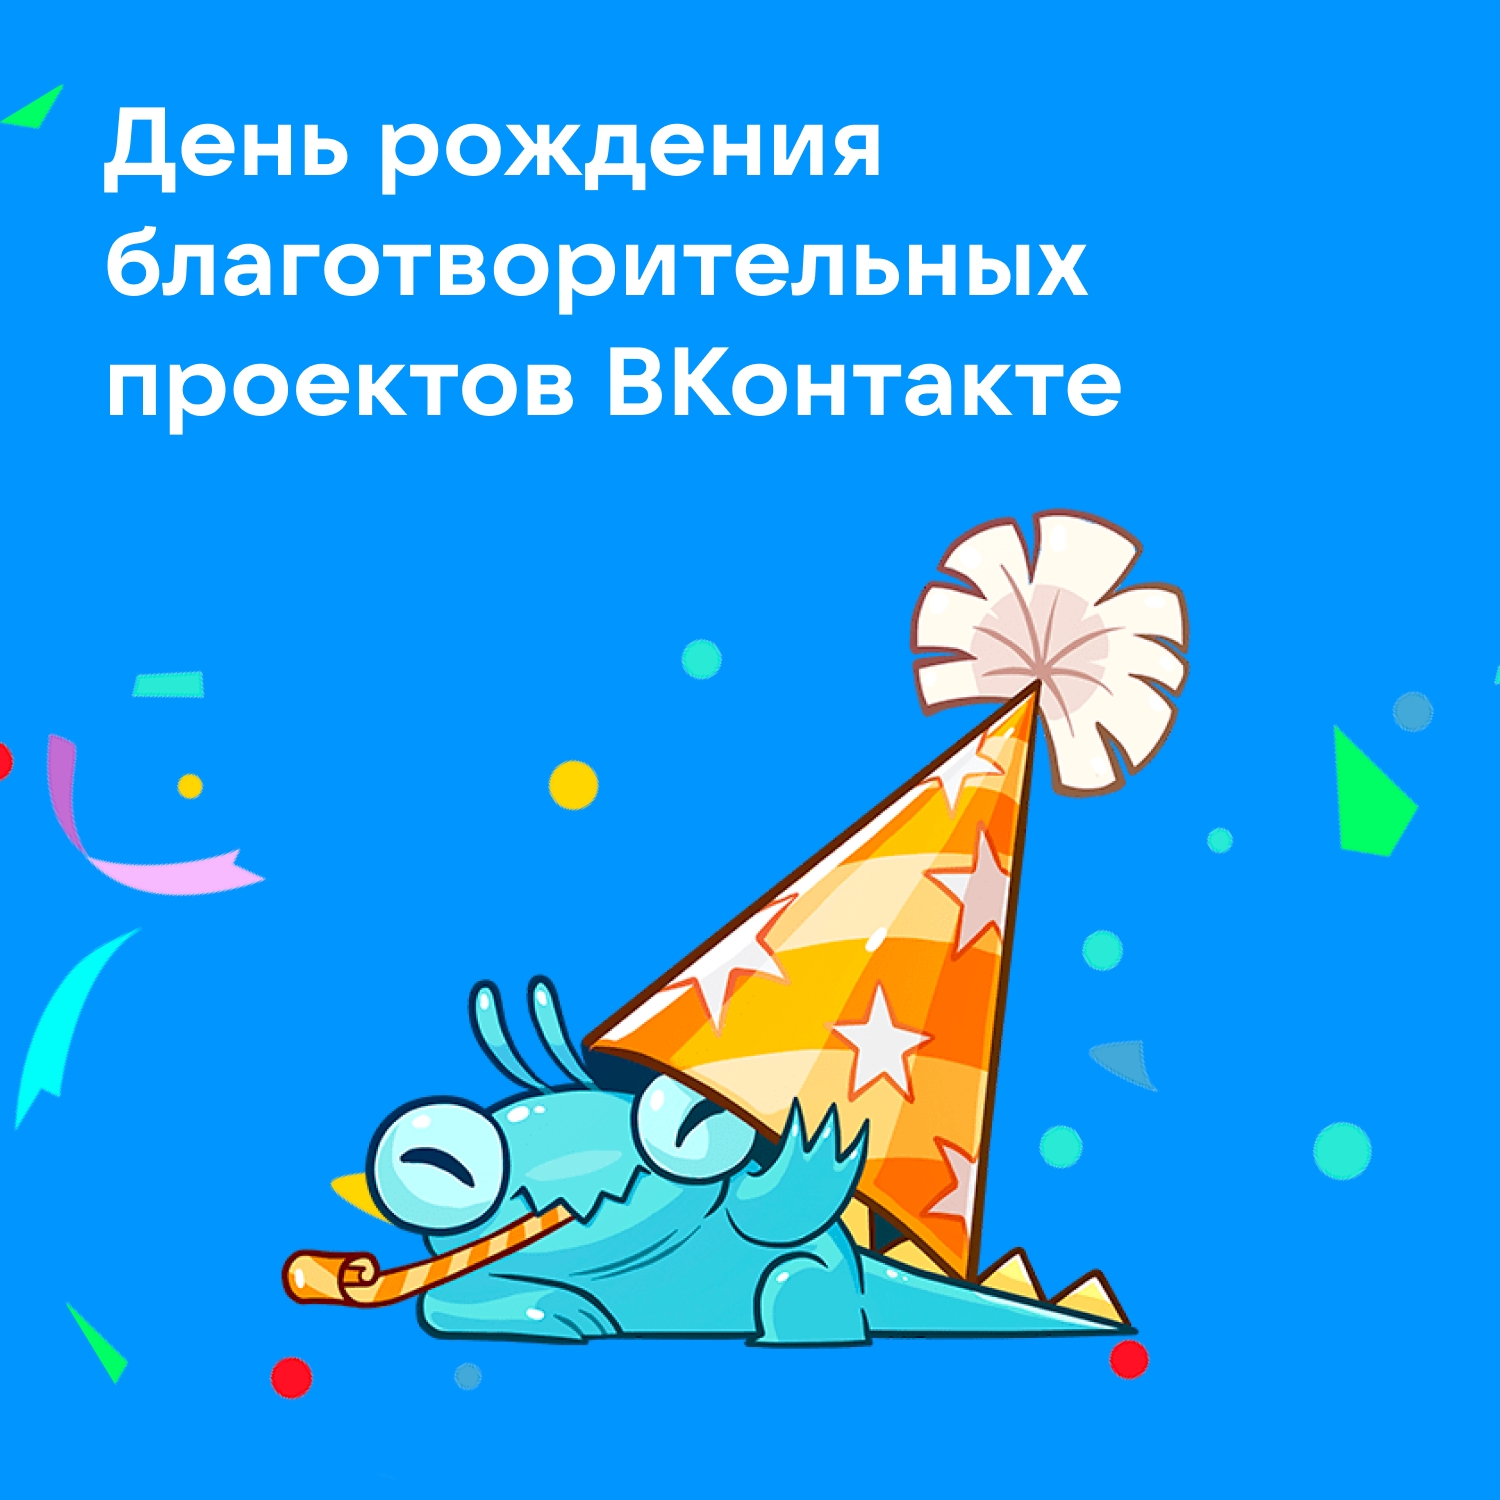 Сегодня, 22 ноября, Благотворительность ВКонтакте празднует……